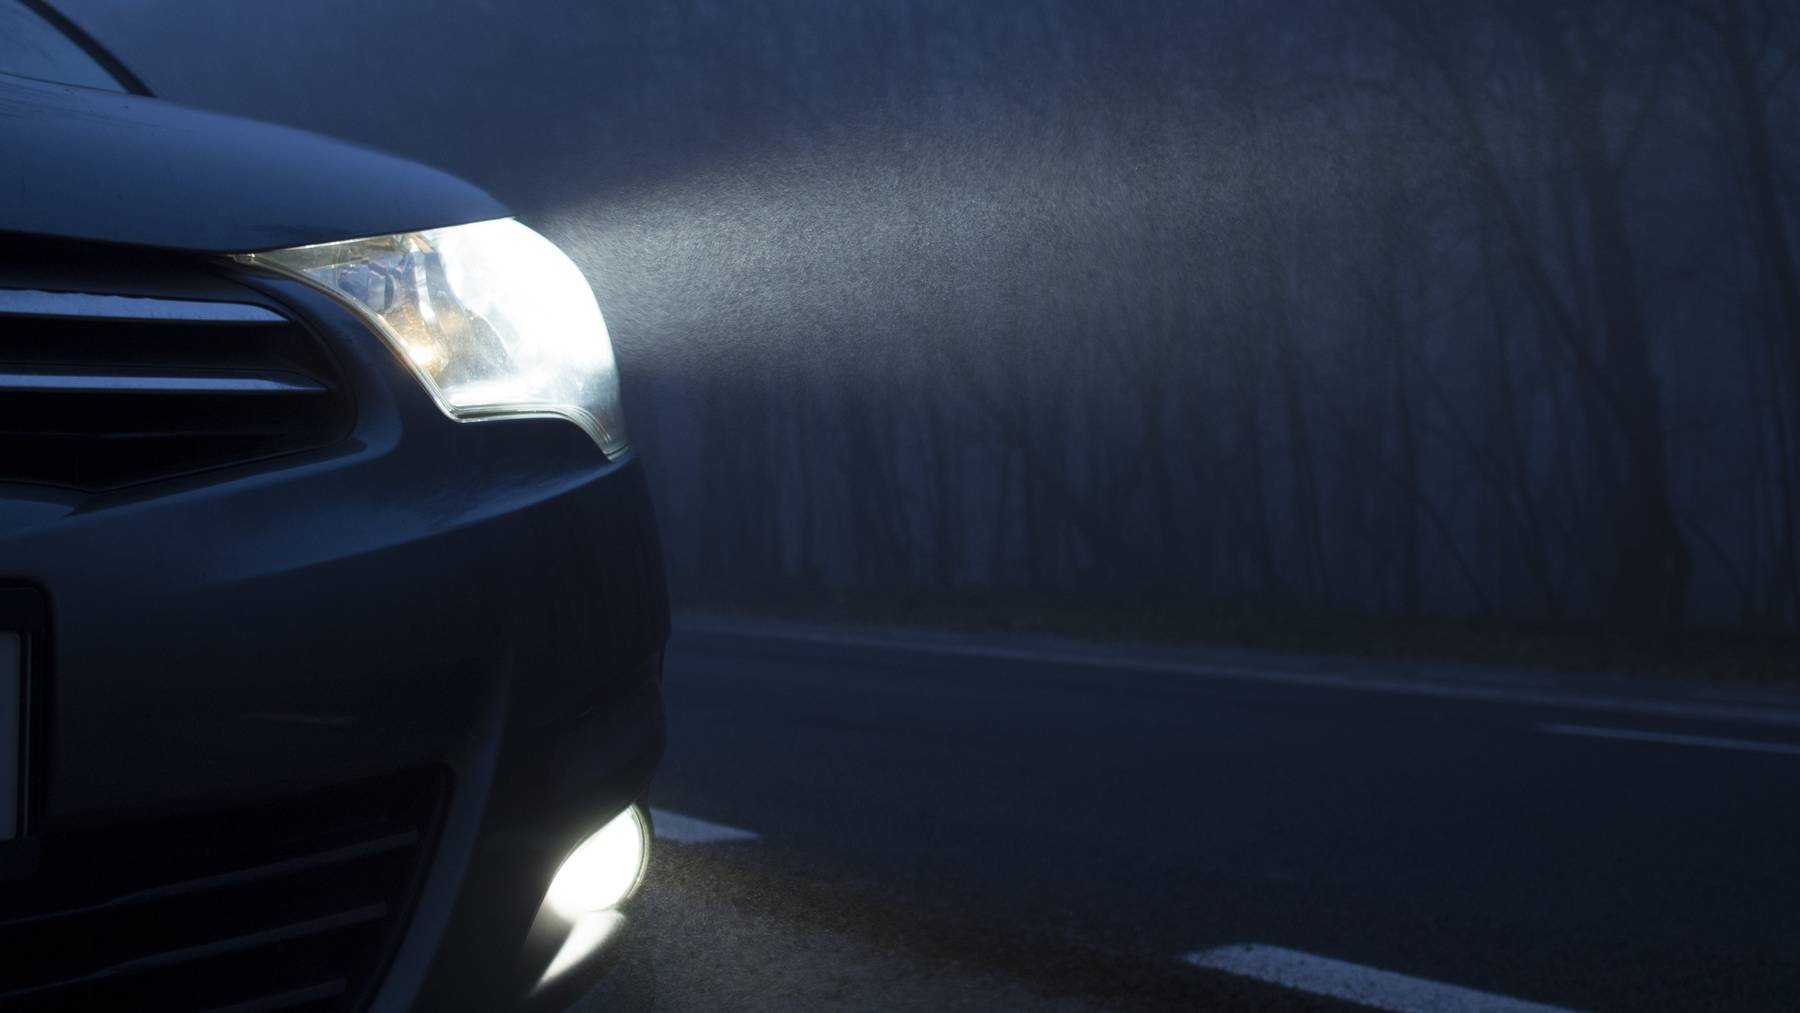 Die Kapo Thurgau führte im Januar mehrere Kontrollen durch mit dem Fokus auf die Beleuchtung der Fahrzeuge. (Symbolbild)